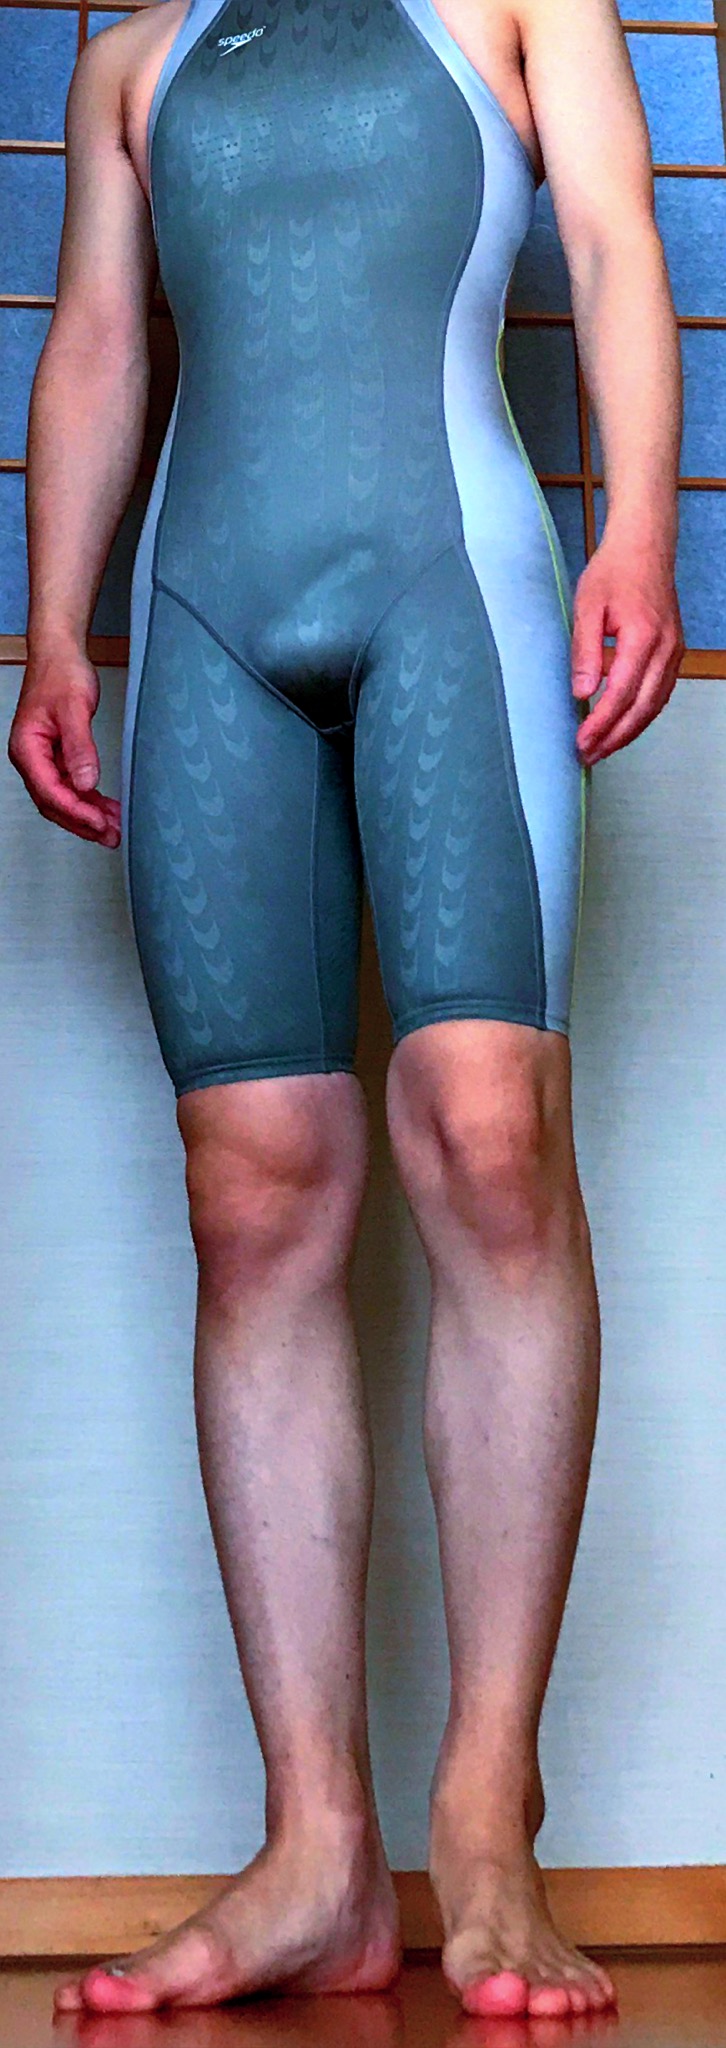 [男性] スパッツ型競泳水着画像掲示板へ投稿されたタイト様のスパッツ型競泳水着画像 No.16394126840001